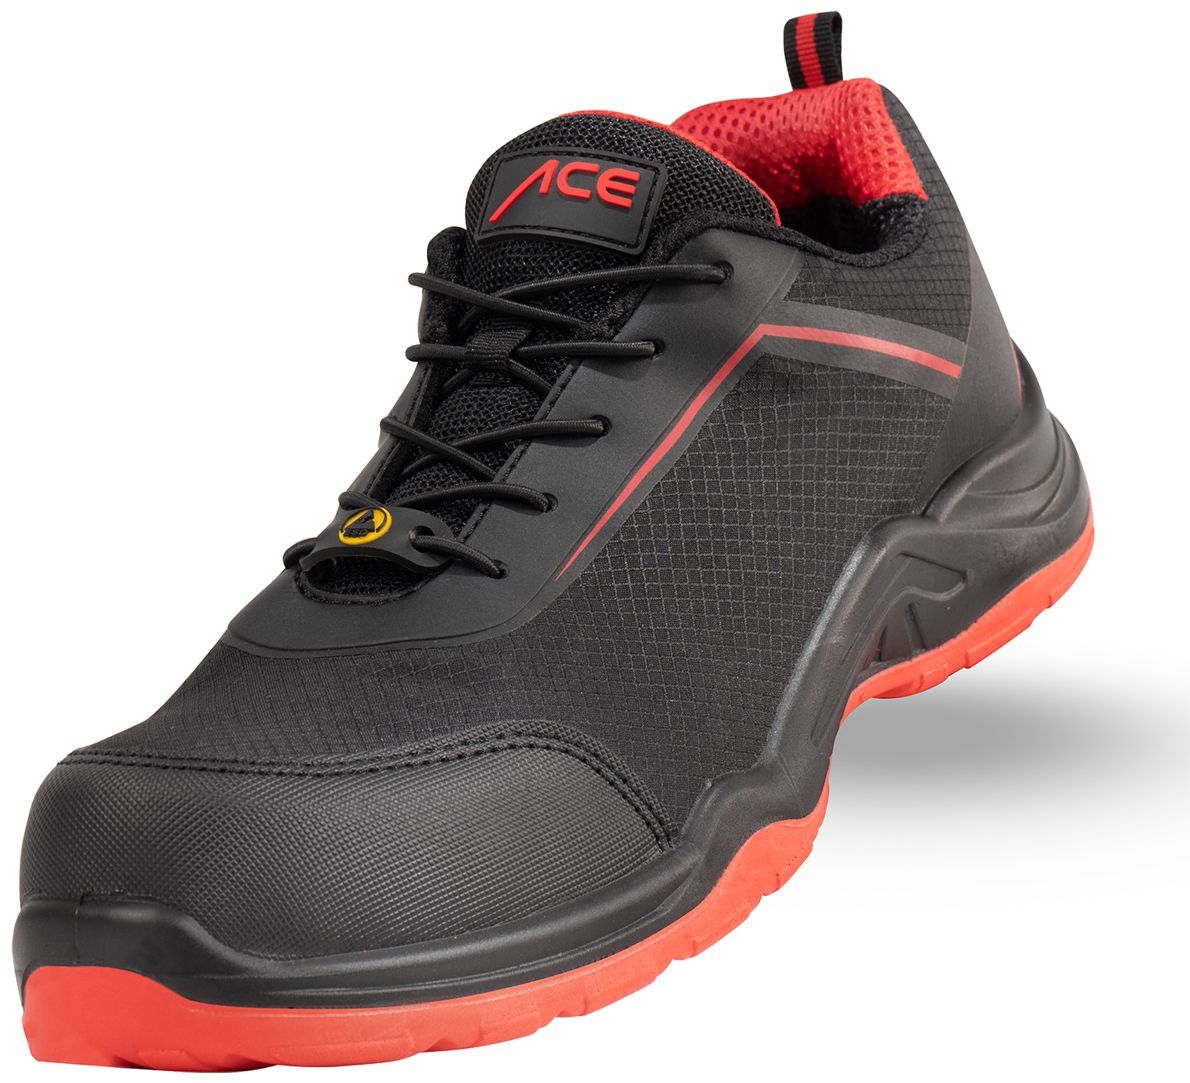 ACE Sapphire S1-P-Arbeits-Sneakers - mit Kunststoffkappe - Sicherheits-Schuhe für die Arbeit  - Schwarz/Rot - 46